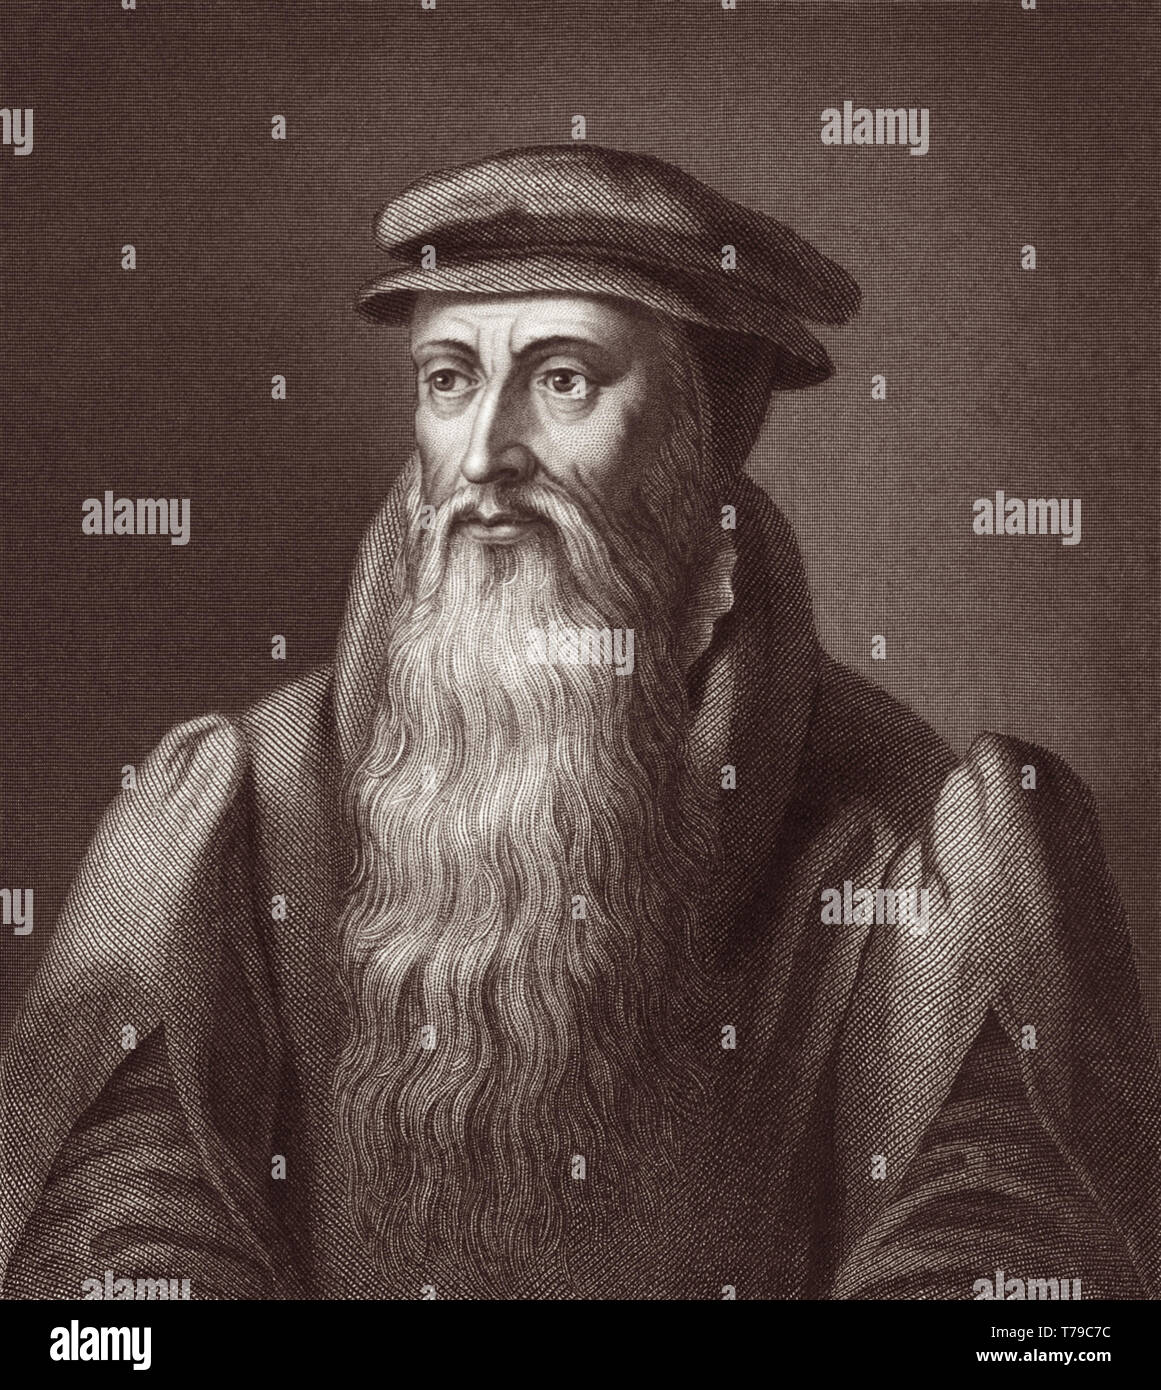 John Knox (c1513-1572) était un ministre écossais, théologien et écrivain qui a été un chef de file de la réforme en Écosse et fut le fondateur de l'Église presbytérienne d'Écosse. Banque D'Images